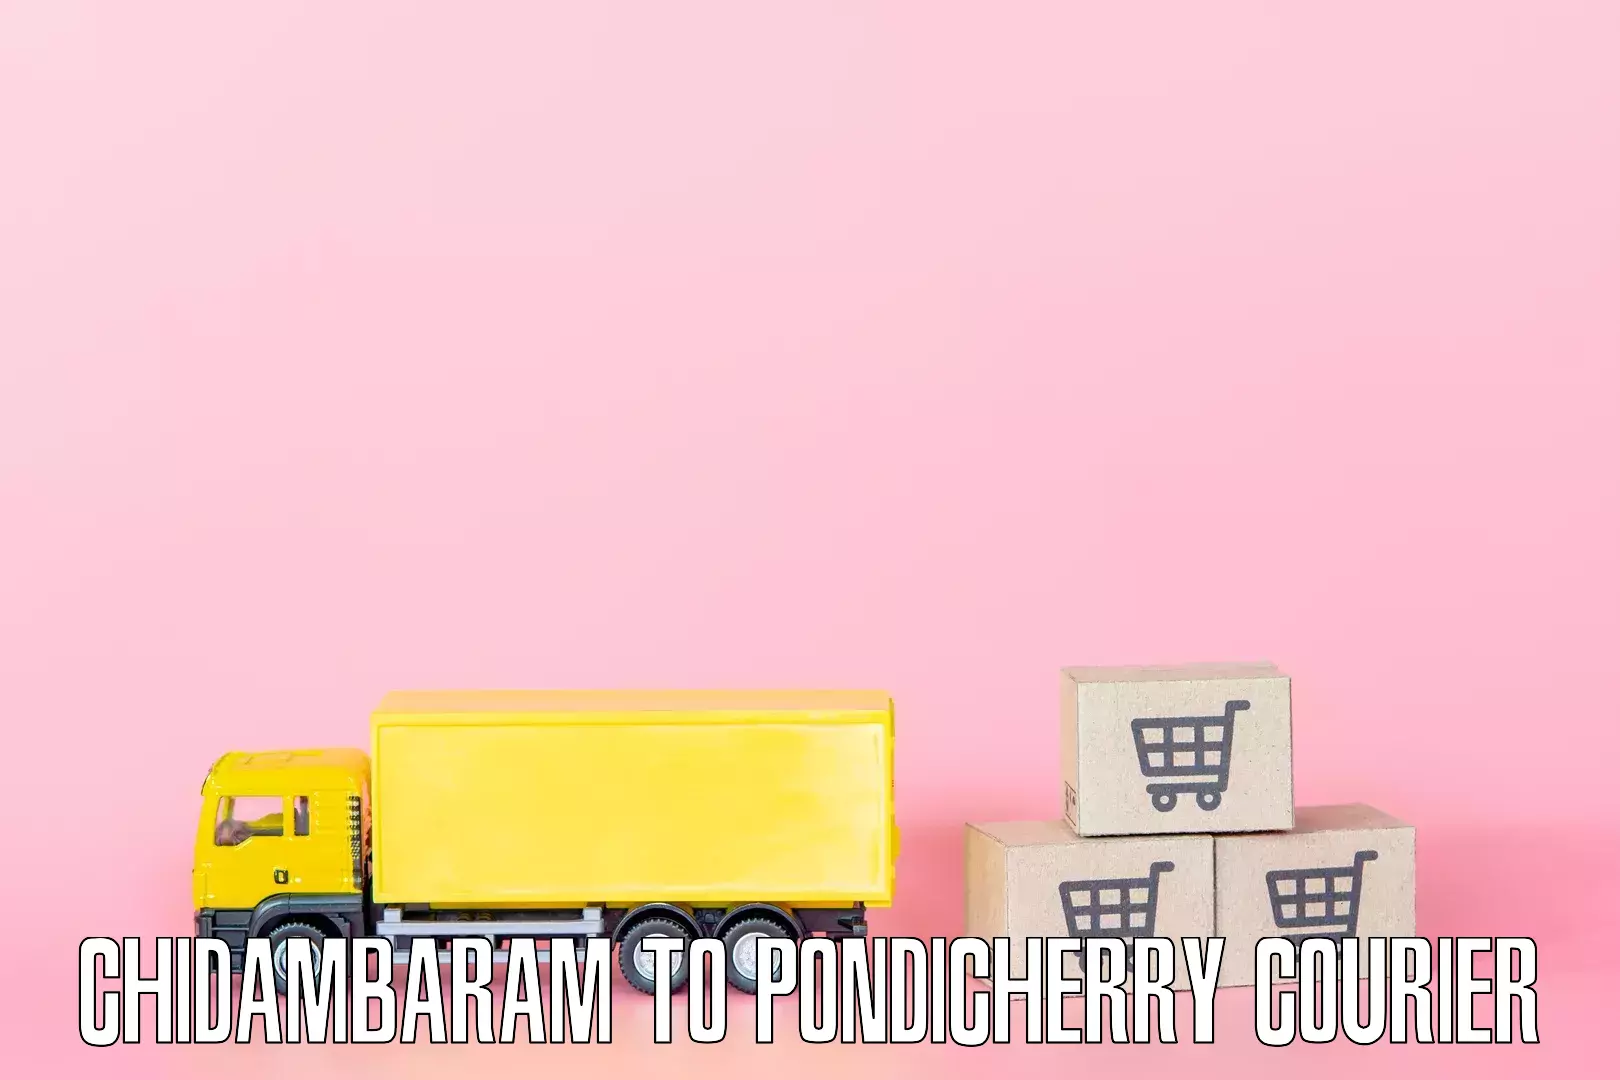 Home goods movers Chidambaram to Pondicherry University